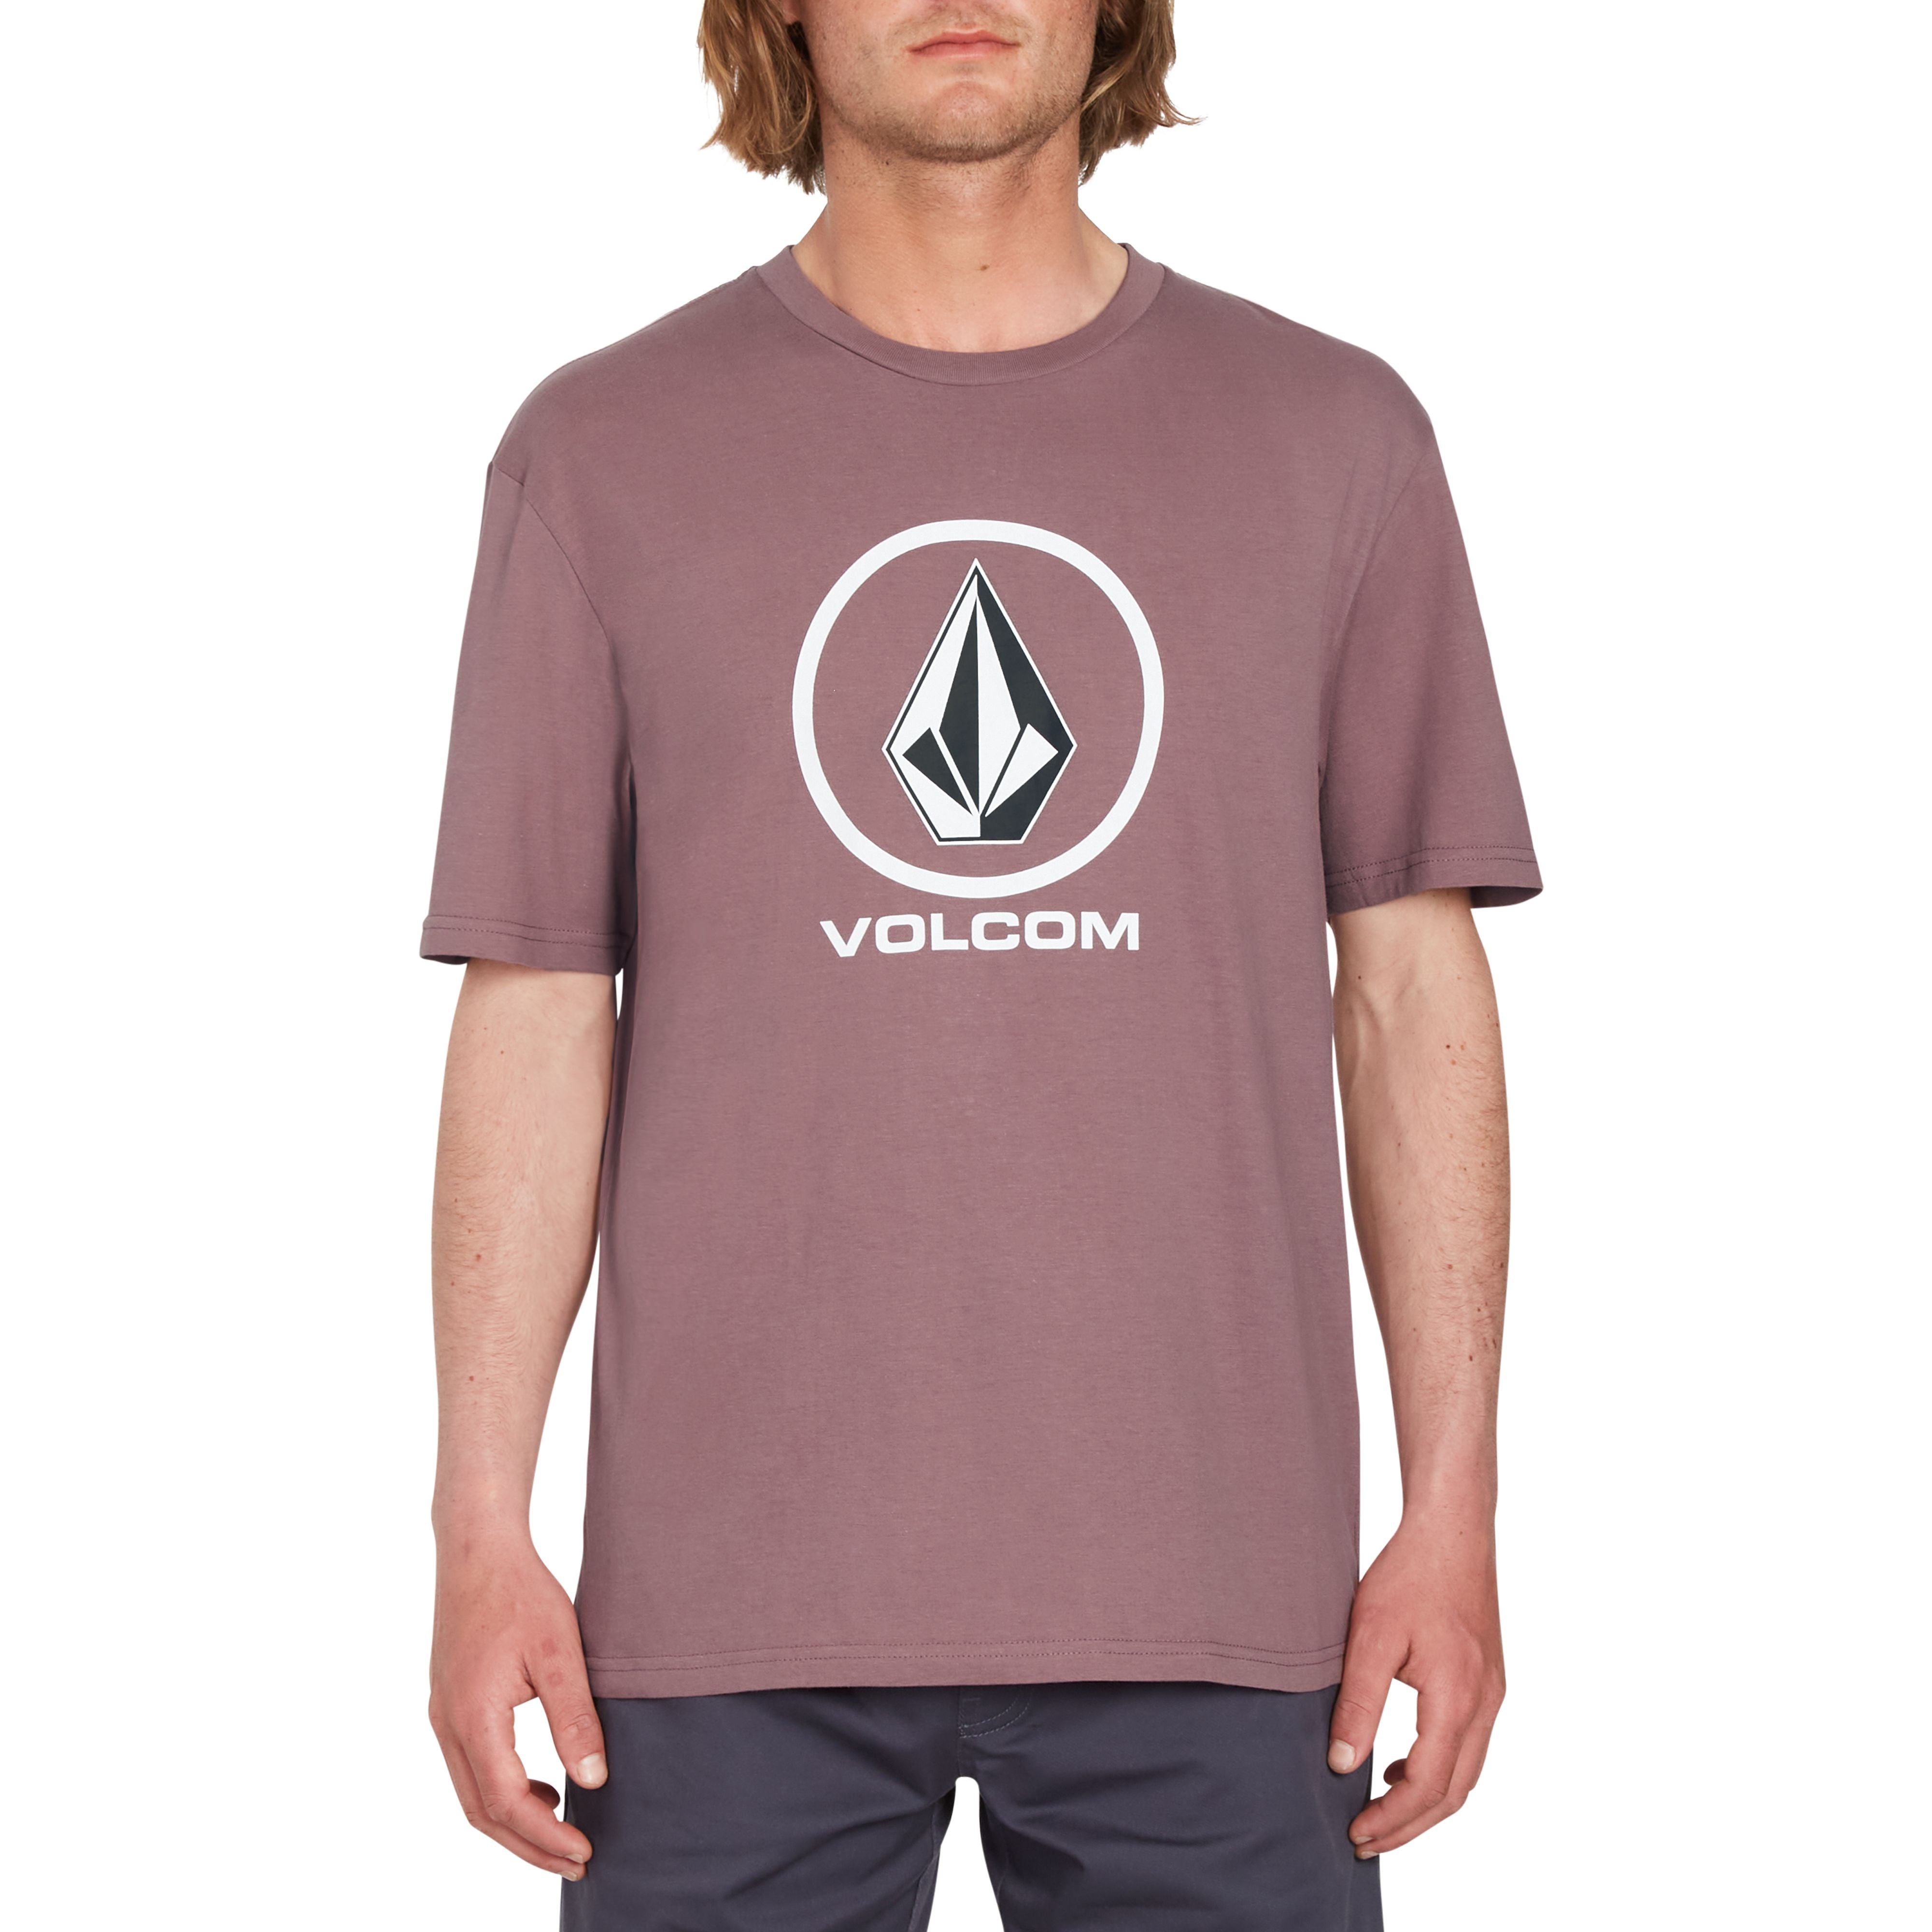 lila farbenes kurzarm t-shirt mit großen Volcom Logo Druck auf der Brust